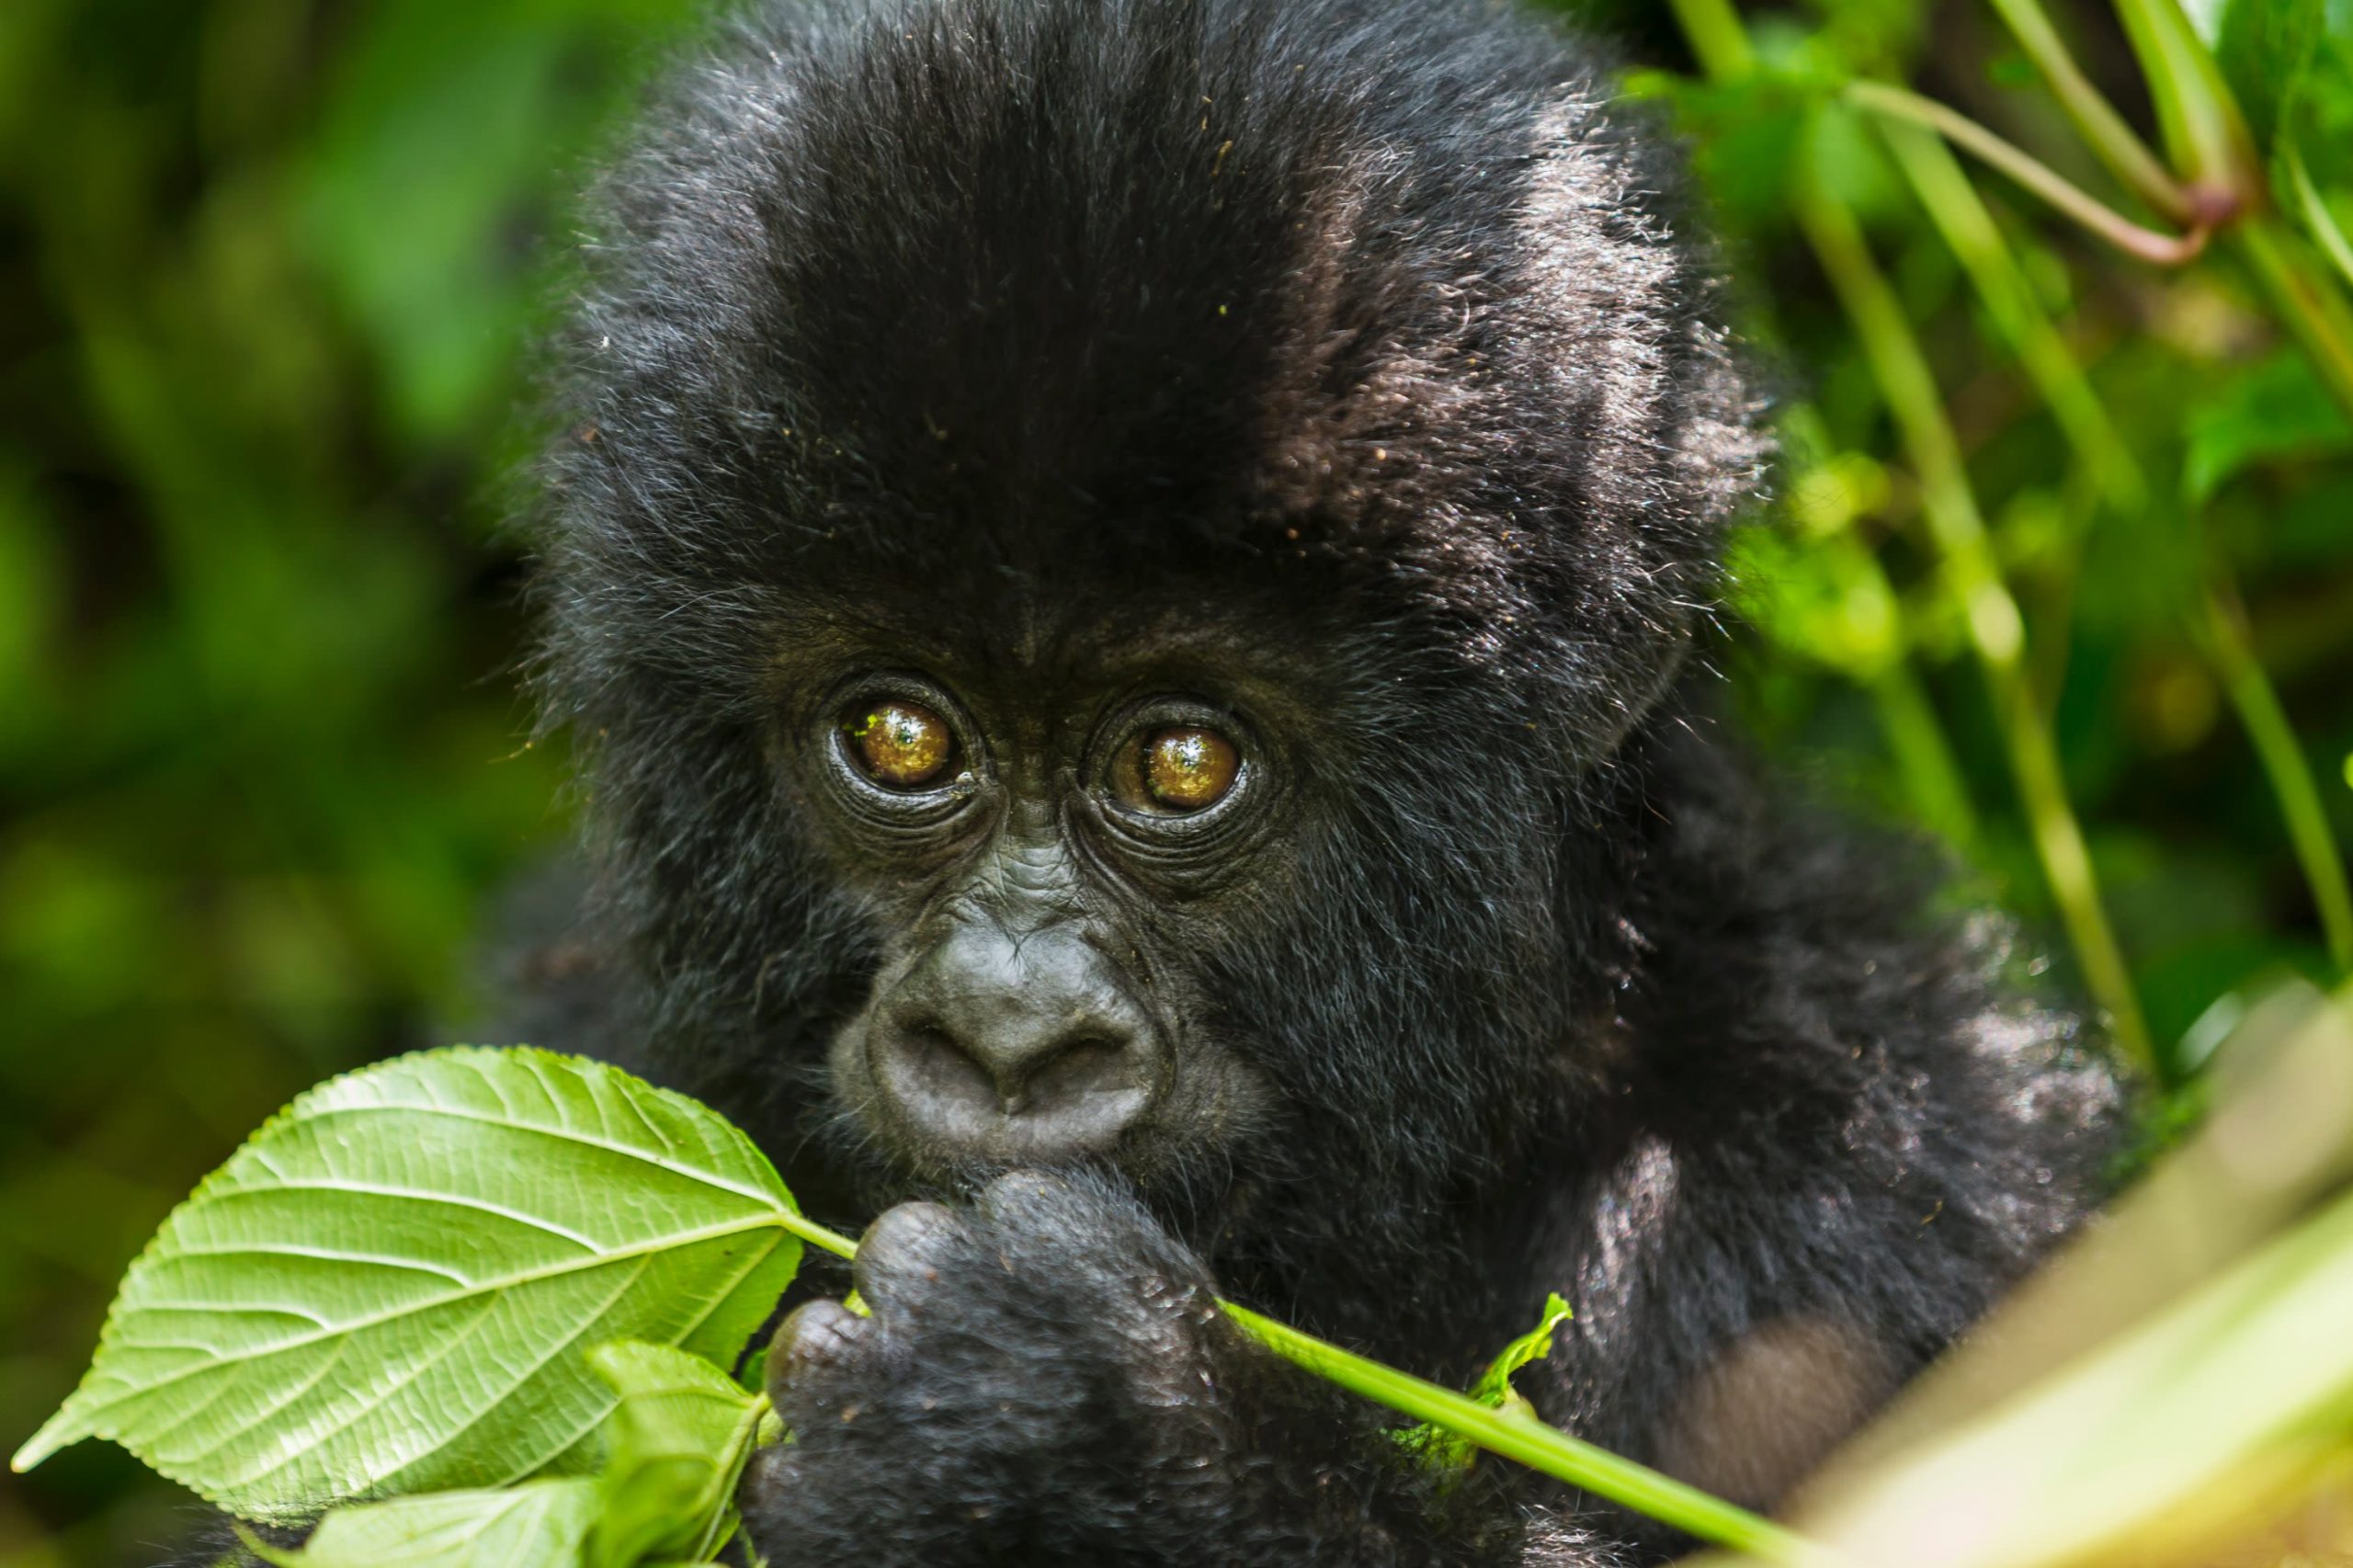 Are Gorillas Dangerous Animals?